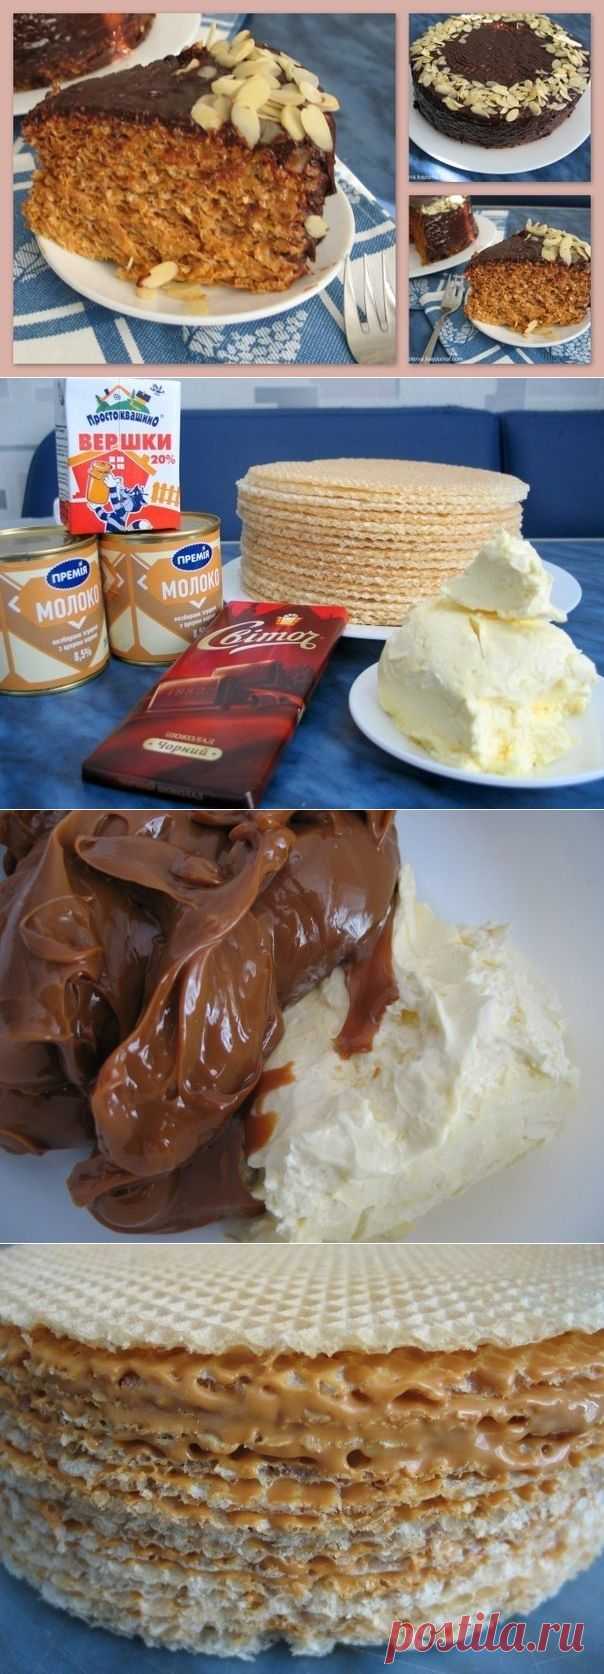 Как приготовить вафельный торт со сгущенкой и шоколадом - рецепт, ингридиенты и фотографии